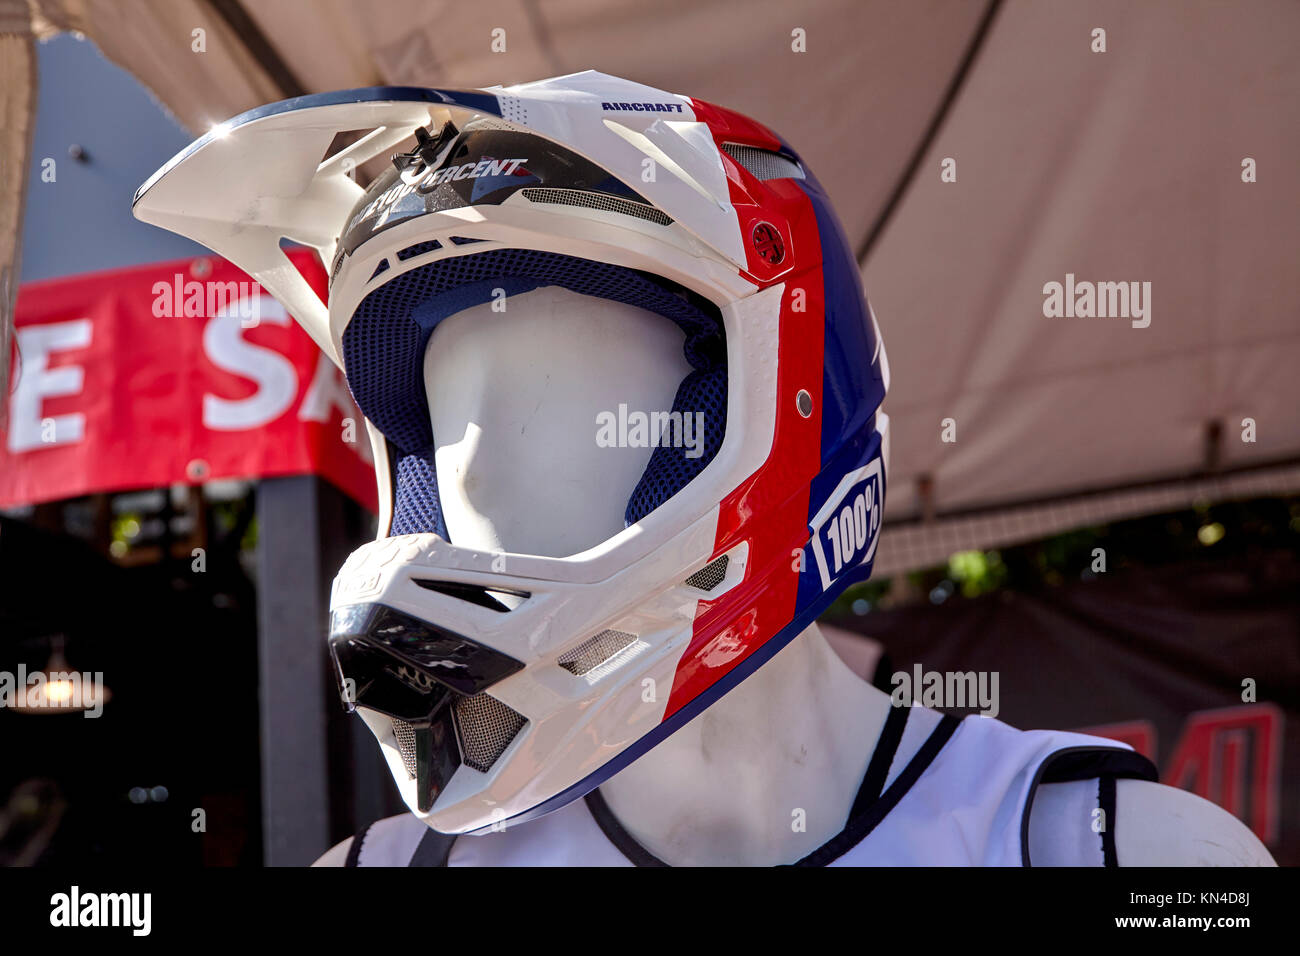 Casque de sécurité - protection de la tête entière pour jet ski, moto, moto ou rider Banque D'Images